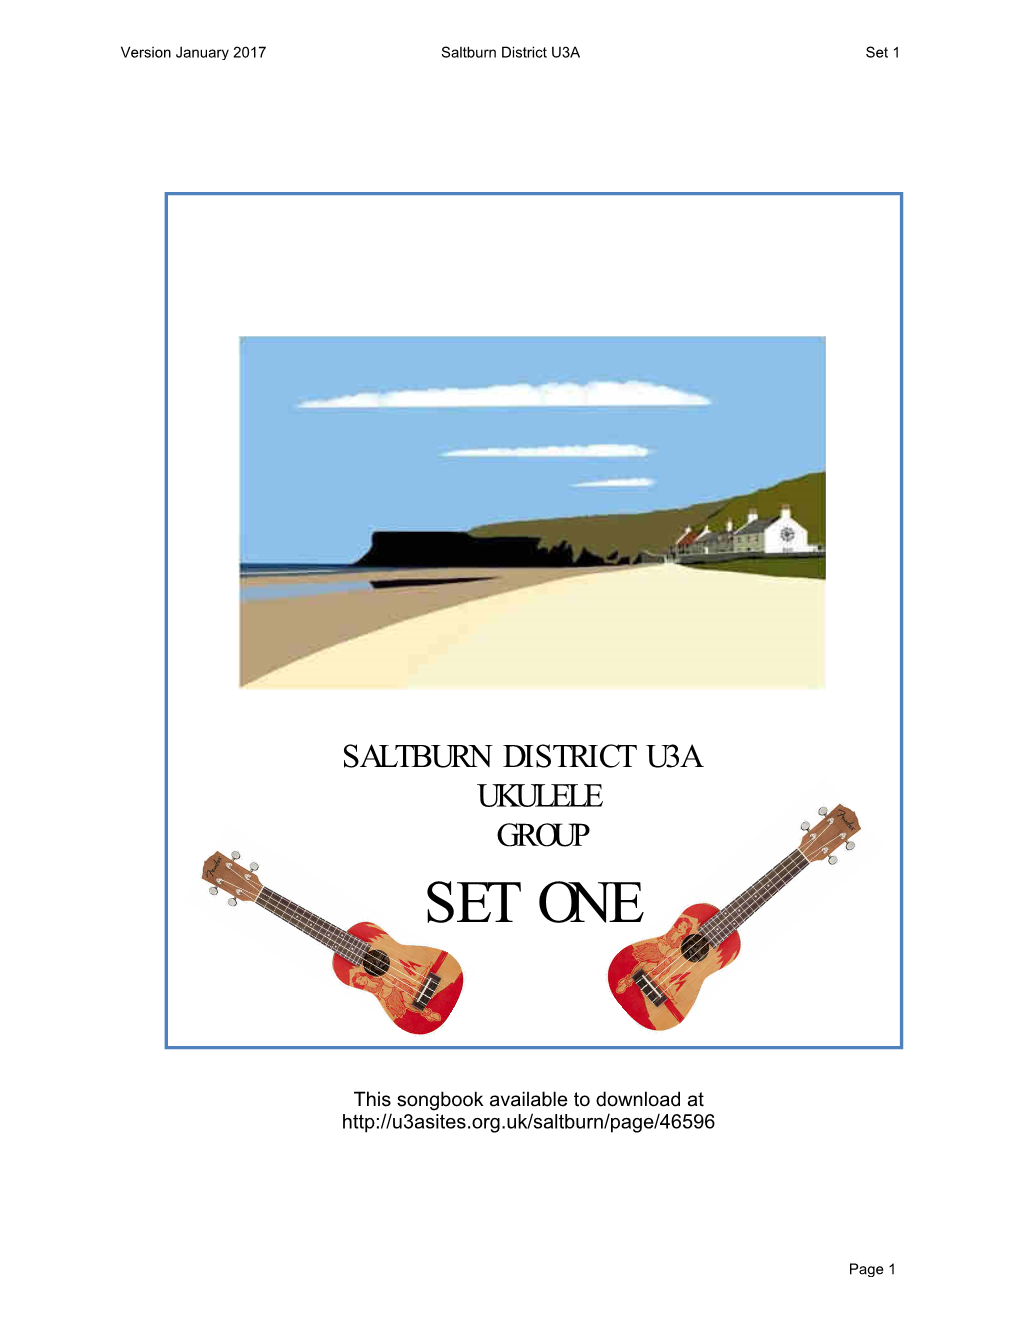 SDU3A Ukulele Songbook Set 1